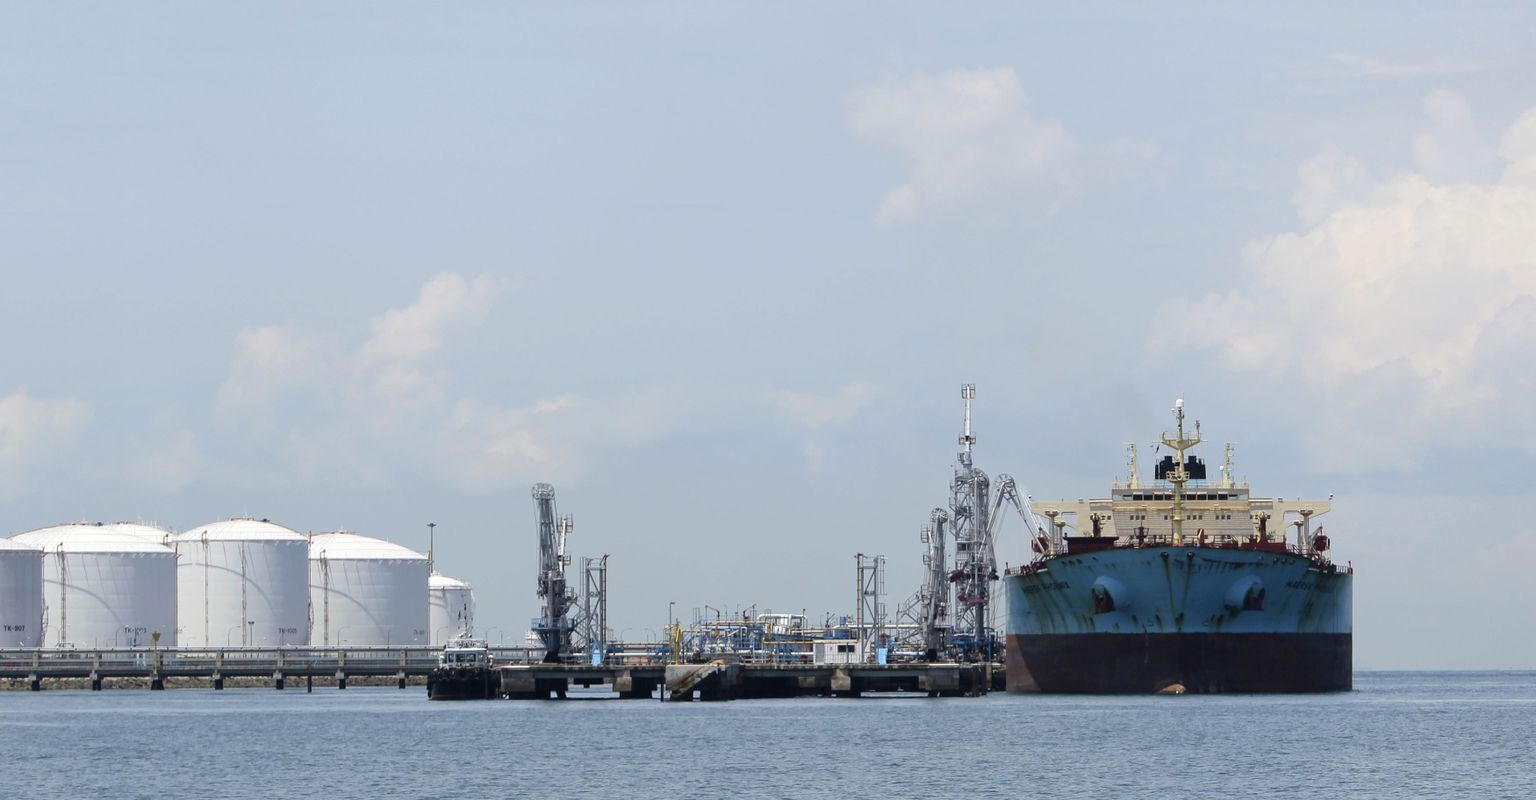 Naftatanker Maersk Phoenix Singapuris Pulau Sebaroki rafineerimistehase kai ääres.